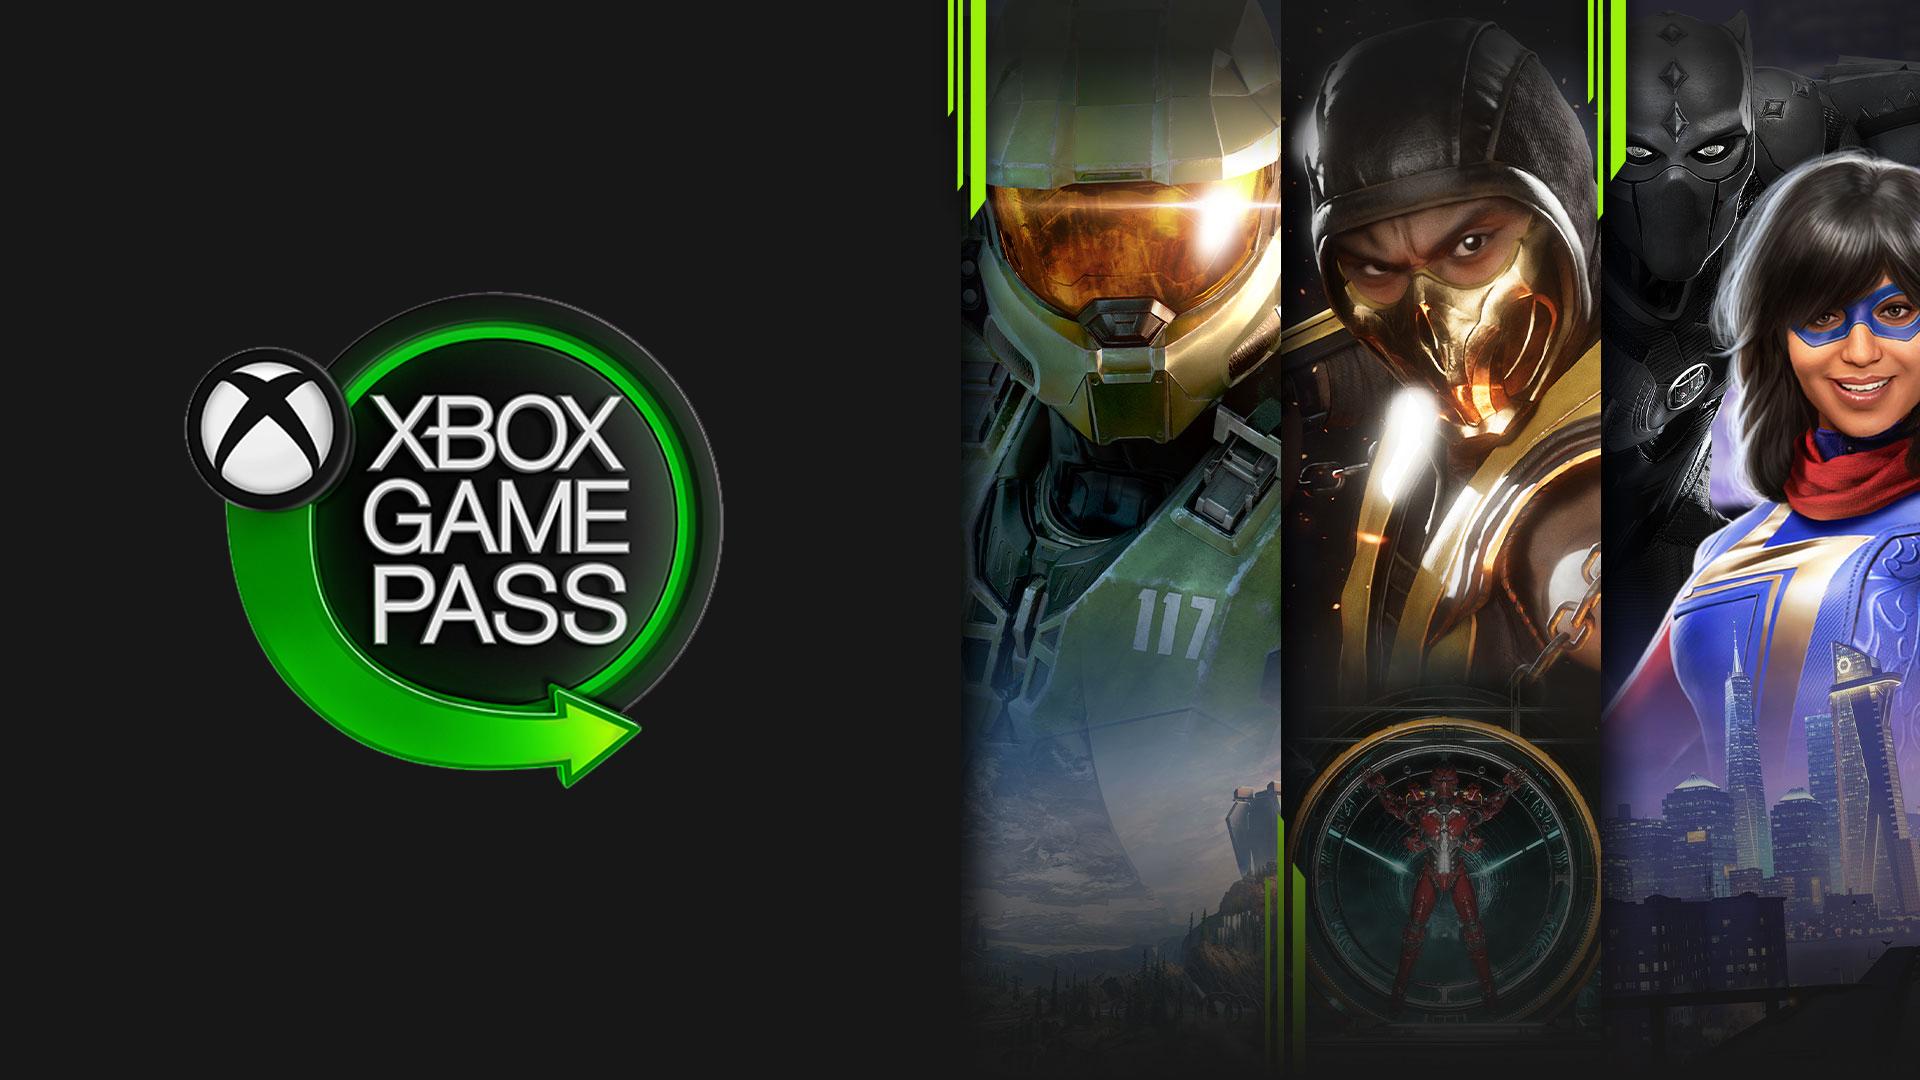 Xbox Game Pass: 5 jogos para zerar em menos de 5 horas